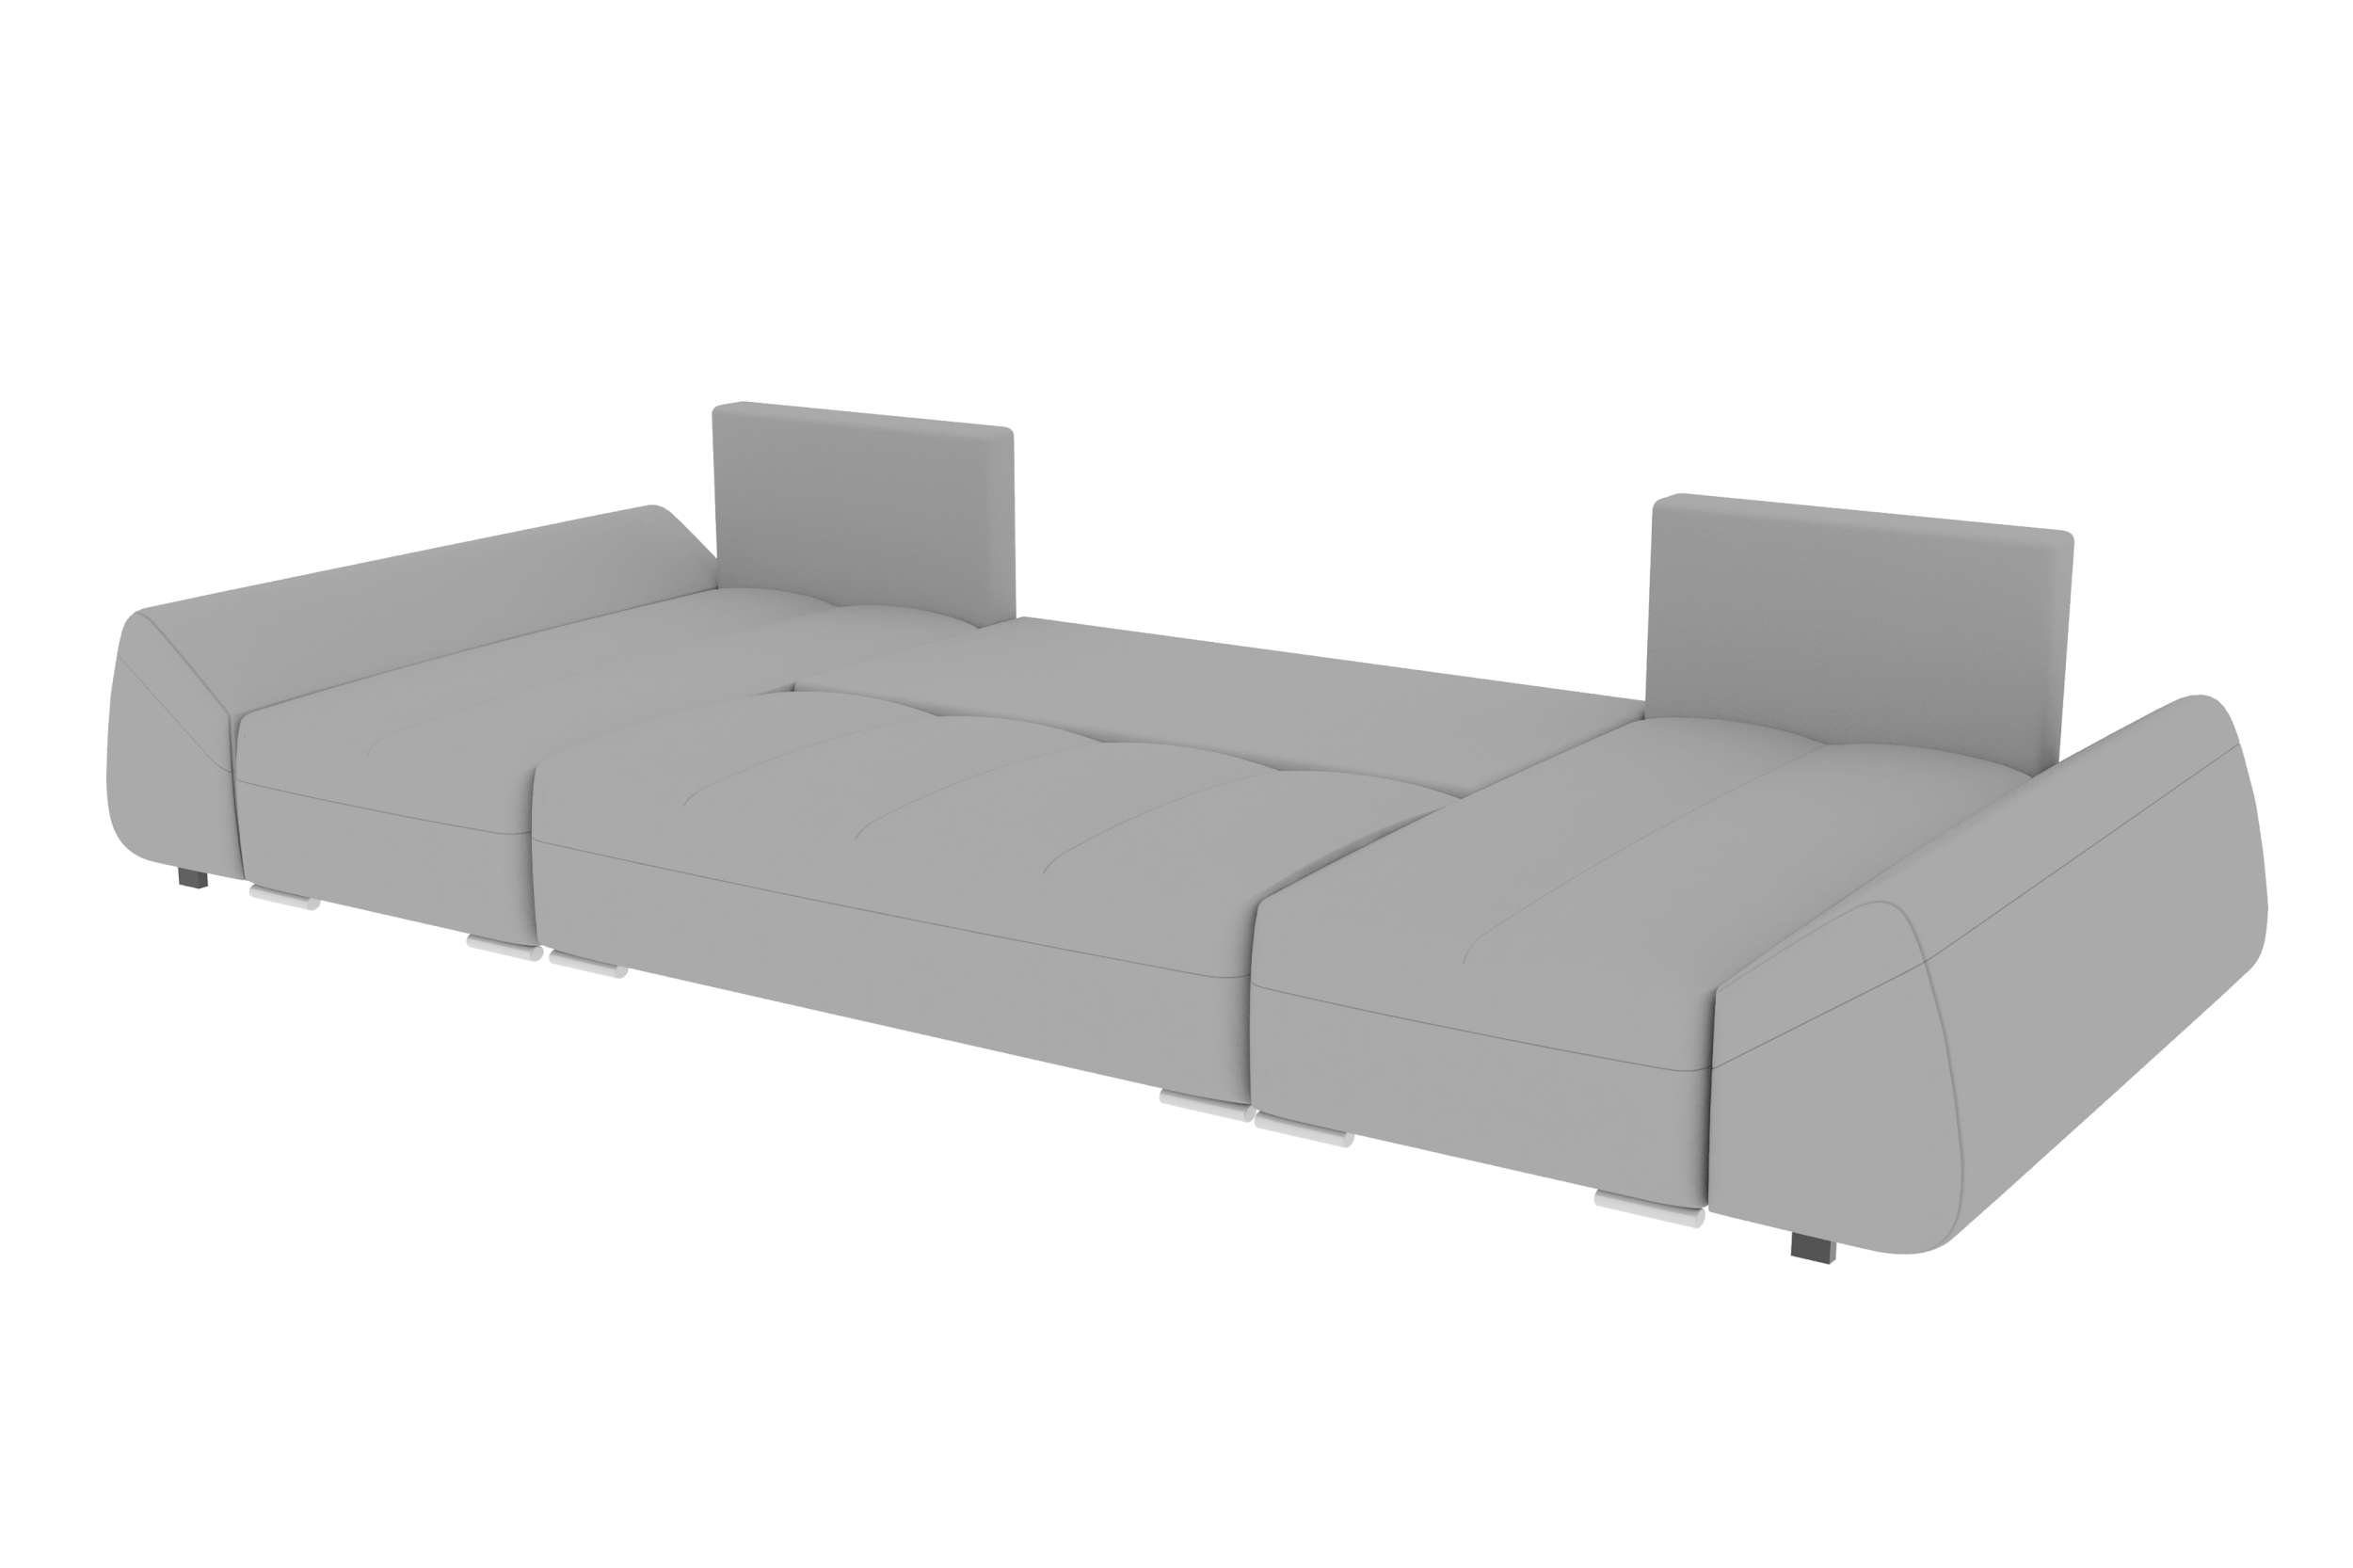 Wohnlandschaft Eckcouch, U-Form, Bettfunktion, mit Modern Bettkasten, Sofa, Stylefy mit Madeira, Design Sitzkomfort,